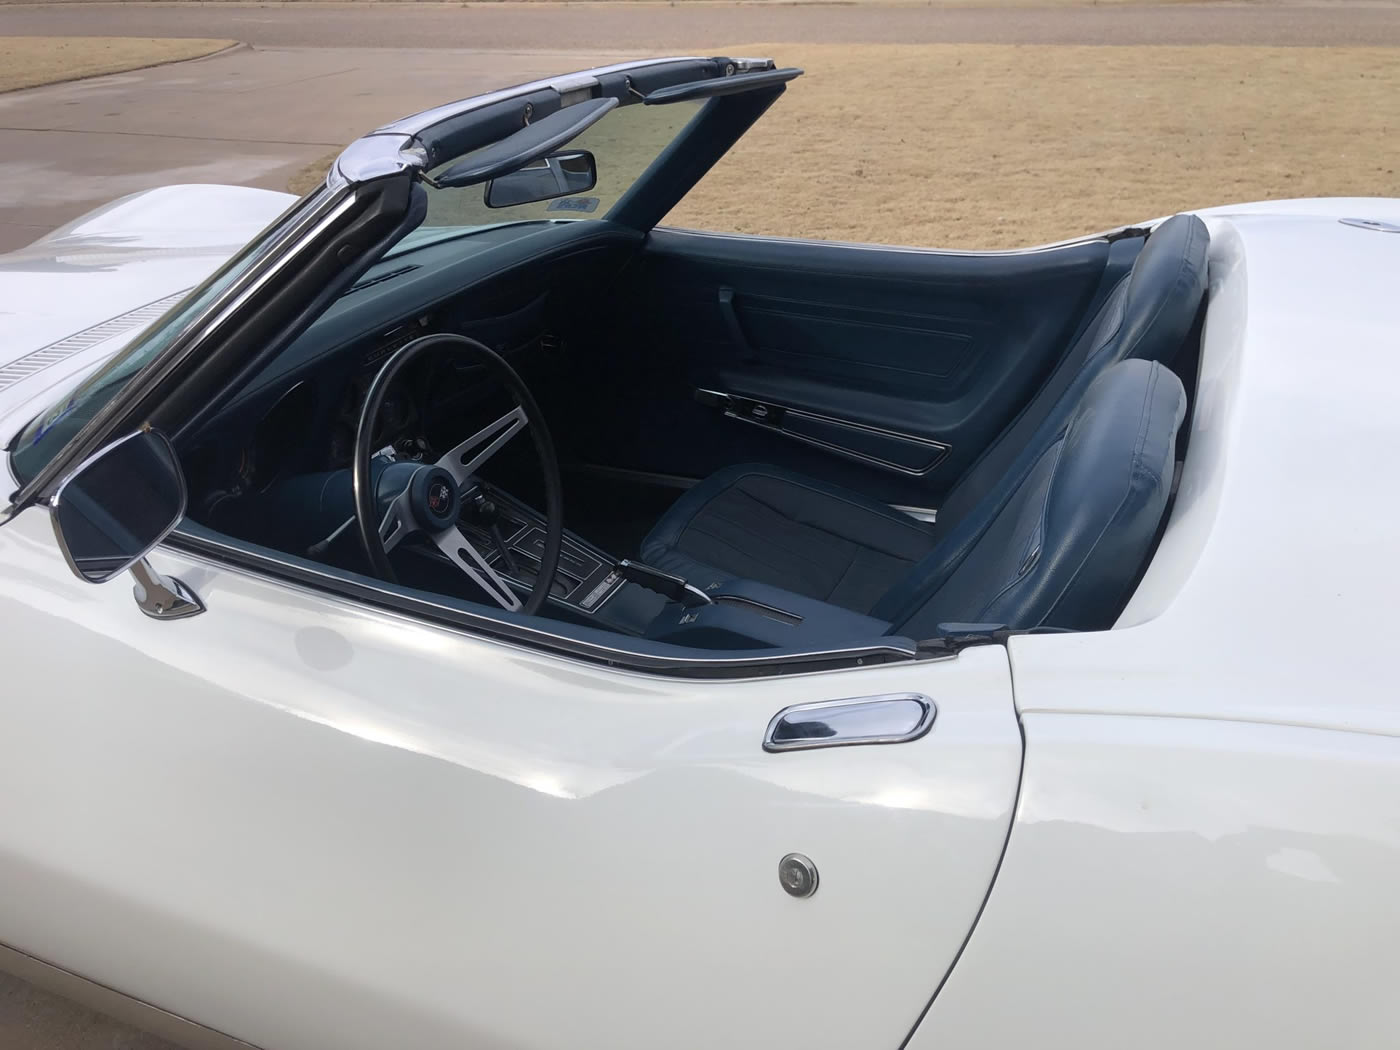 1972 Corvette Convertible in Classic White